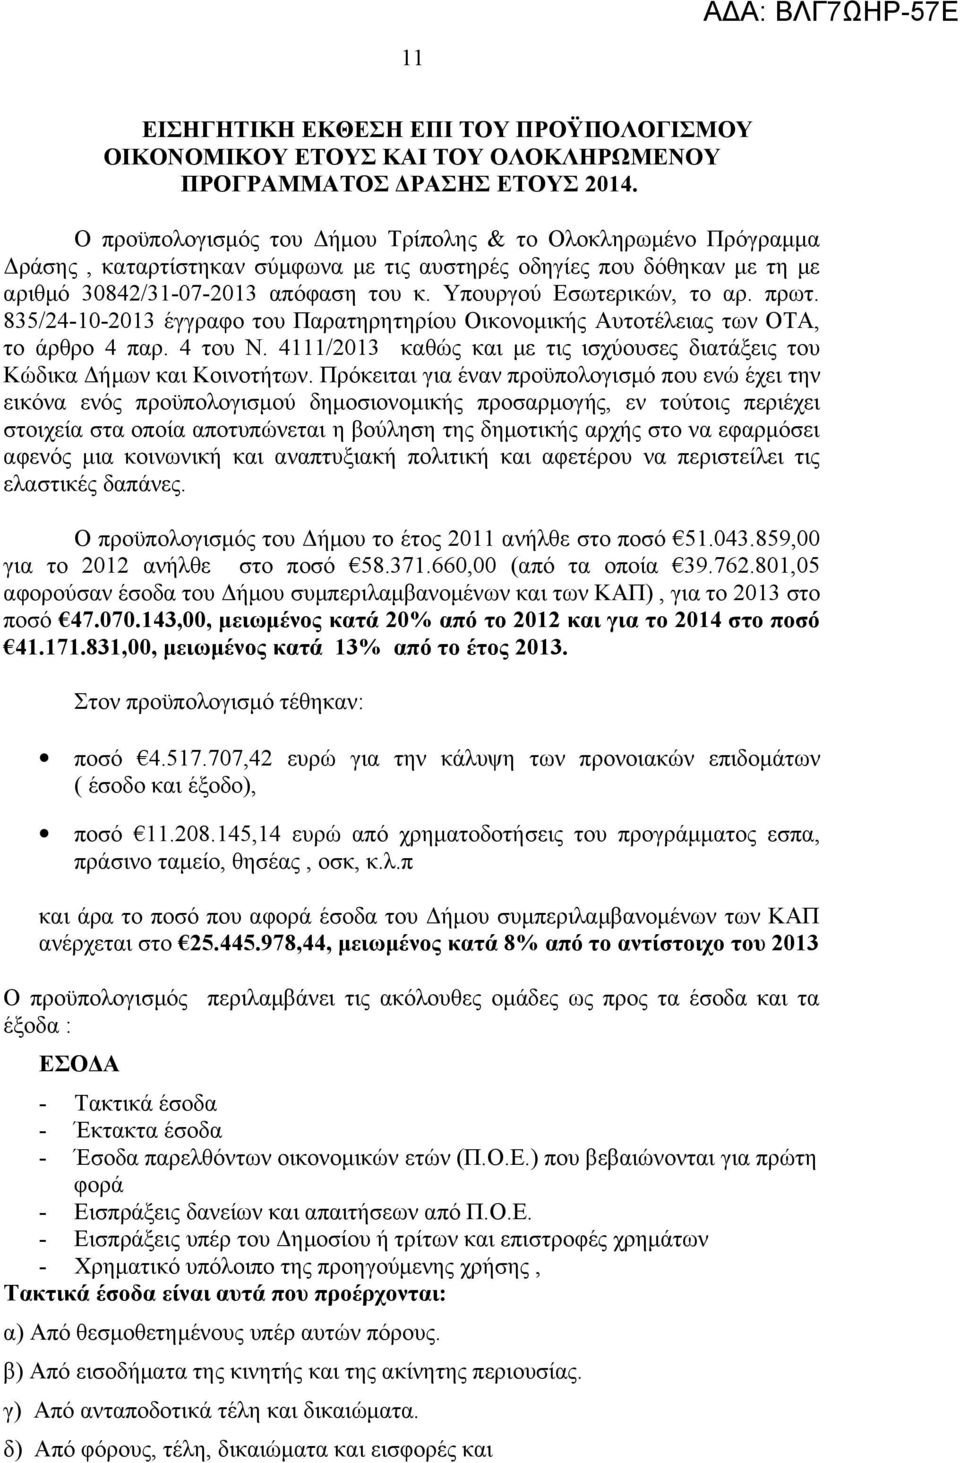 Υπουργού Εσωτερικών, το αρ. πρωτ. 835/24-10-2013 έγγραφο του Παρατηρητηρίου Οικονομικής Αυτοτέλειας των ΟΤΑ, το άρθρο 4 παρ. 4 του Ν.